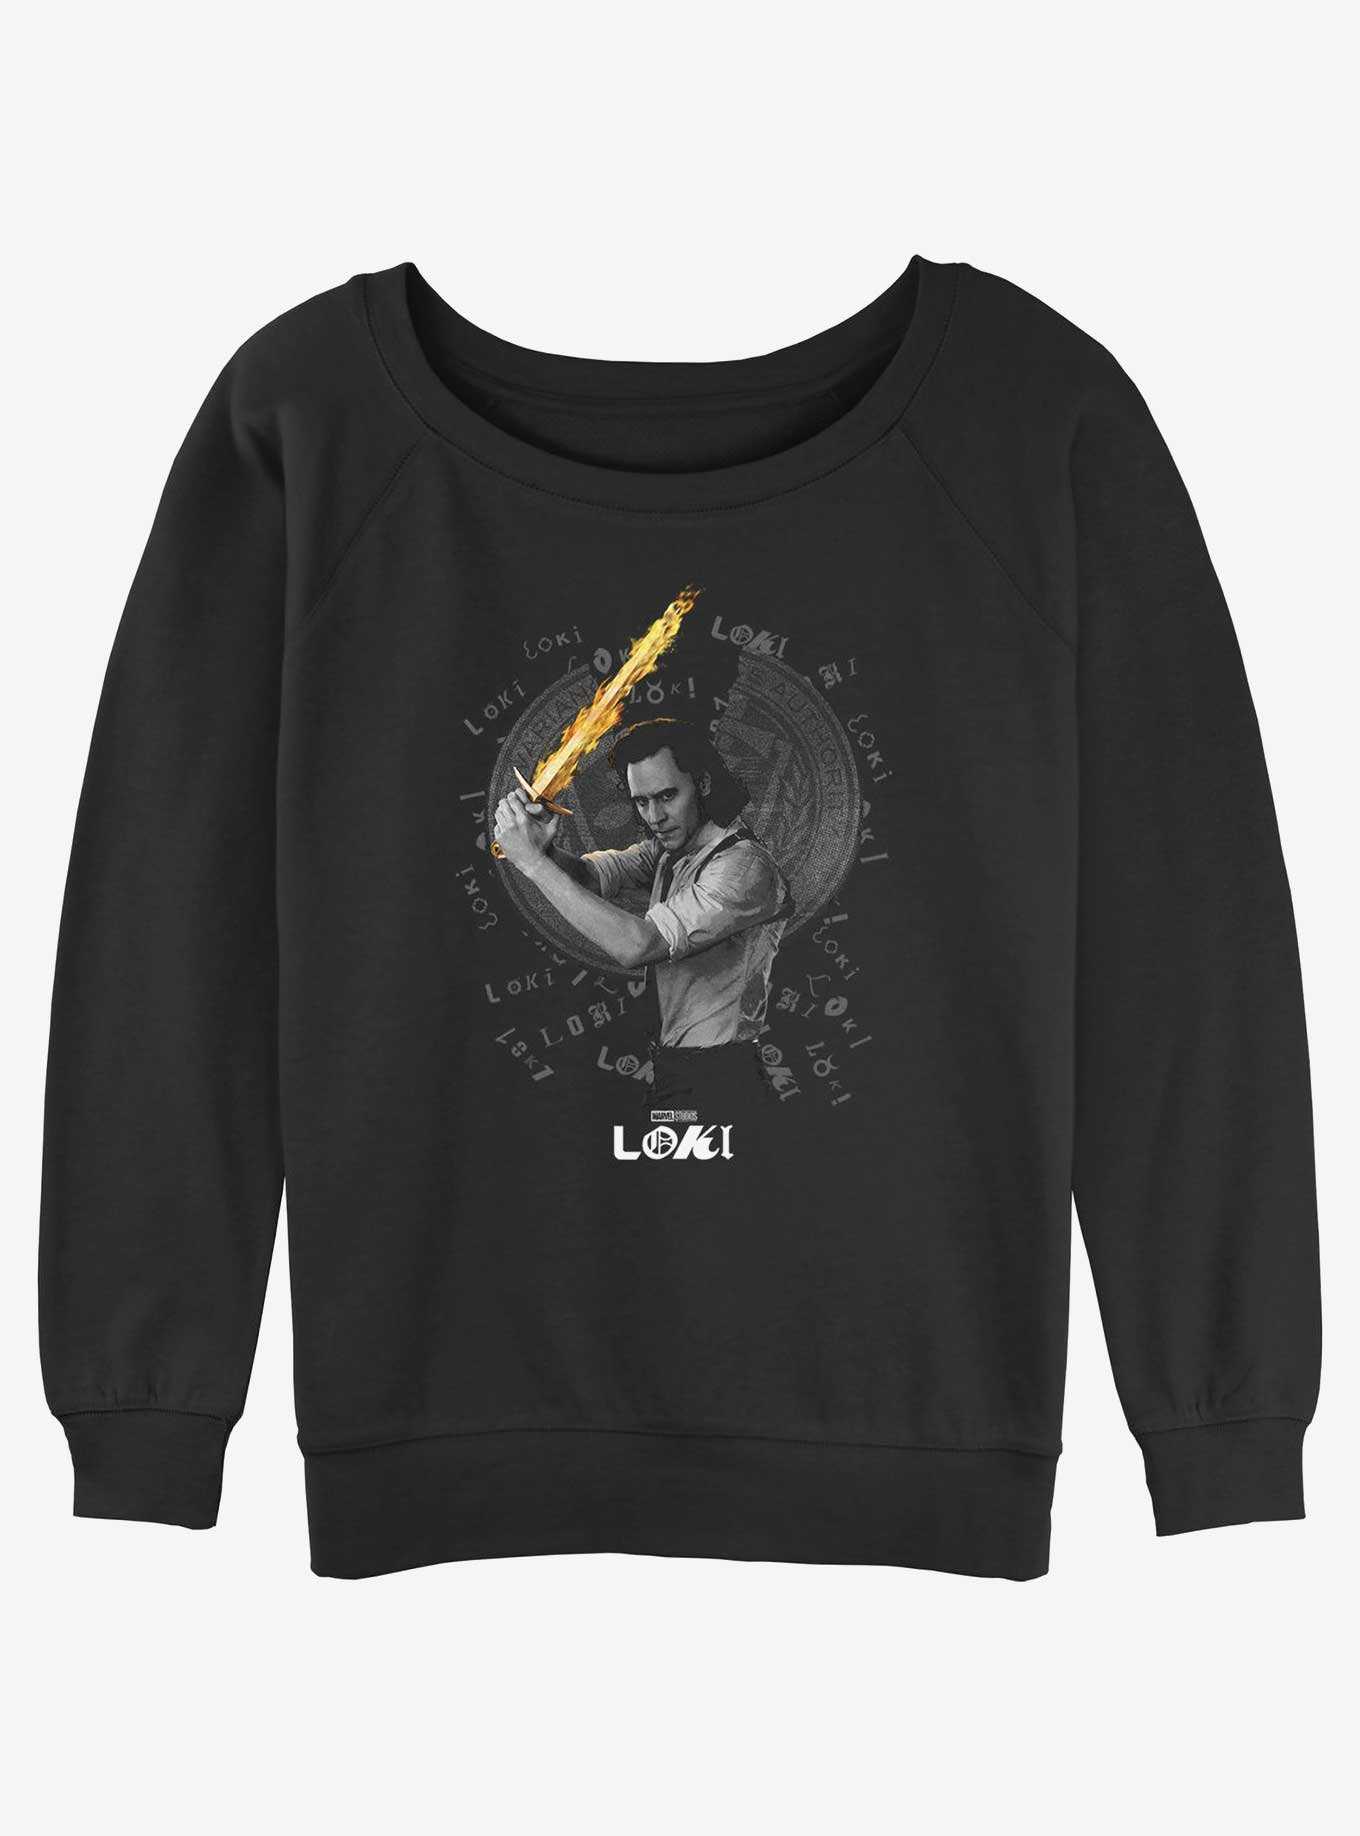 Marvel Loki Laevateinn Flaming Sword Womens Slouchy Sweatshirt, , hi-res